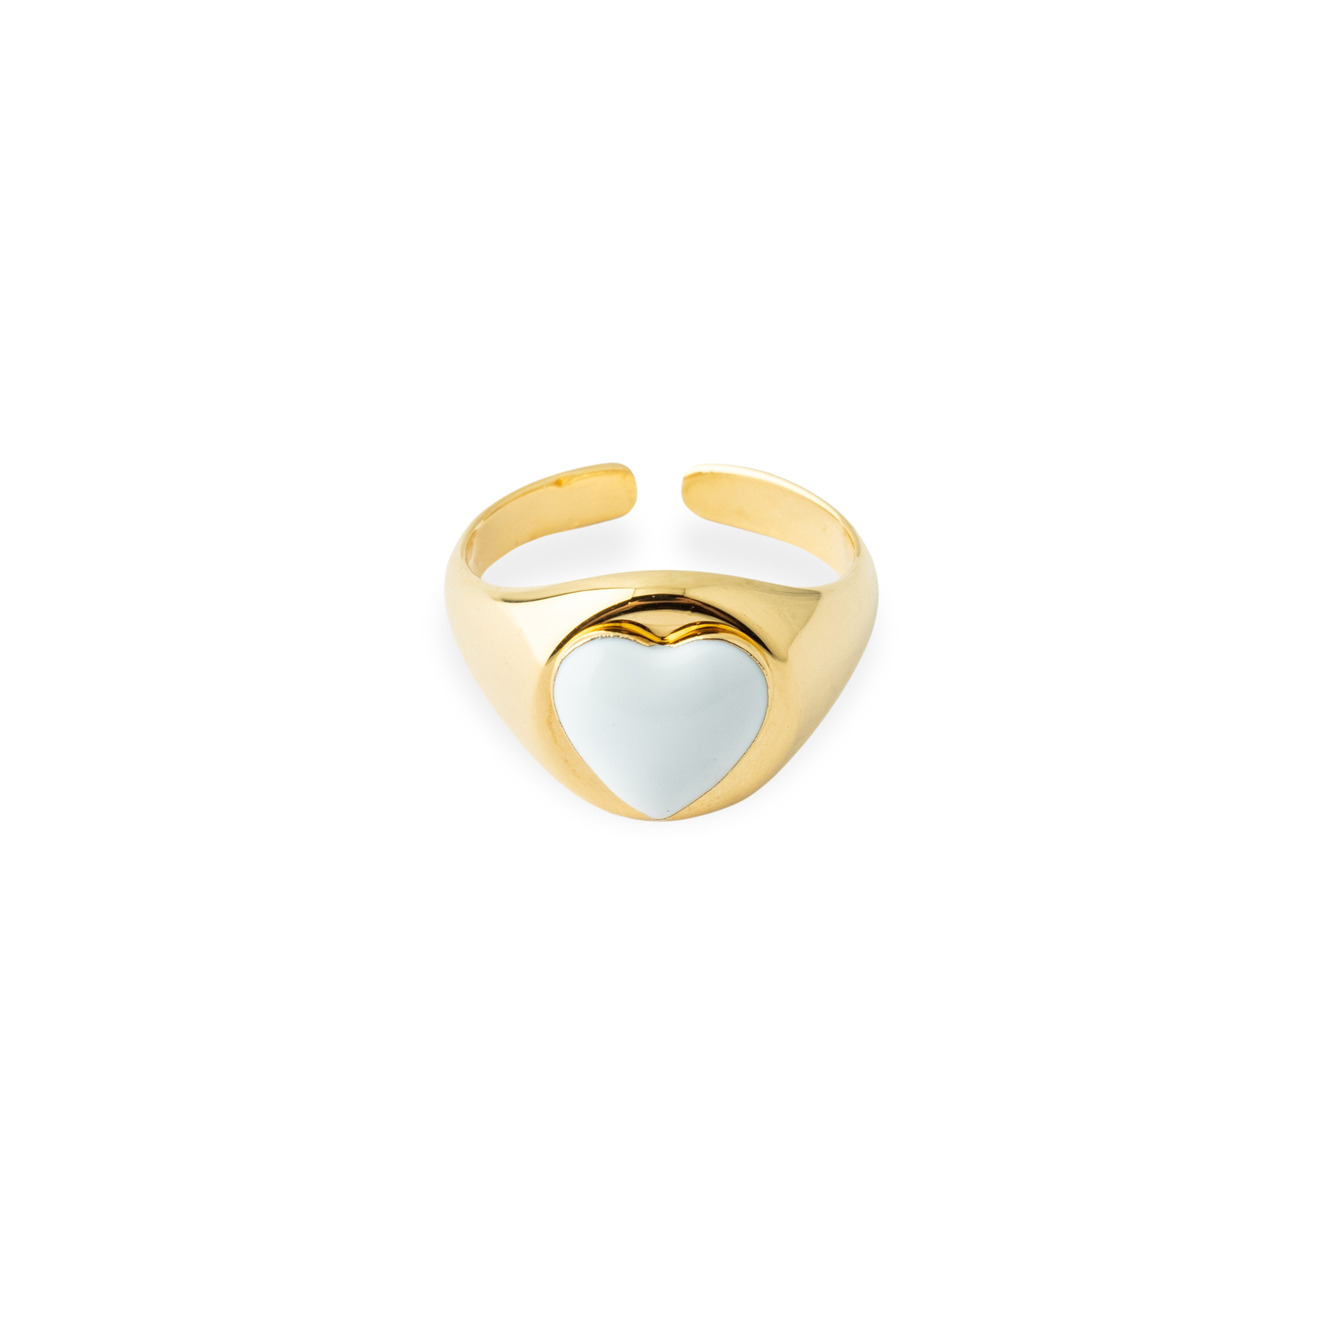 Aqua Золотистое кольцо-печатка с белым сердцем